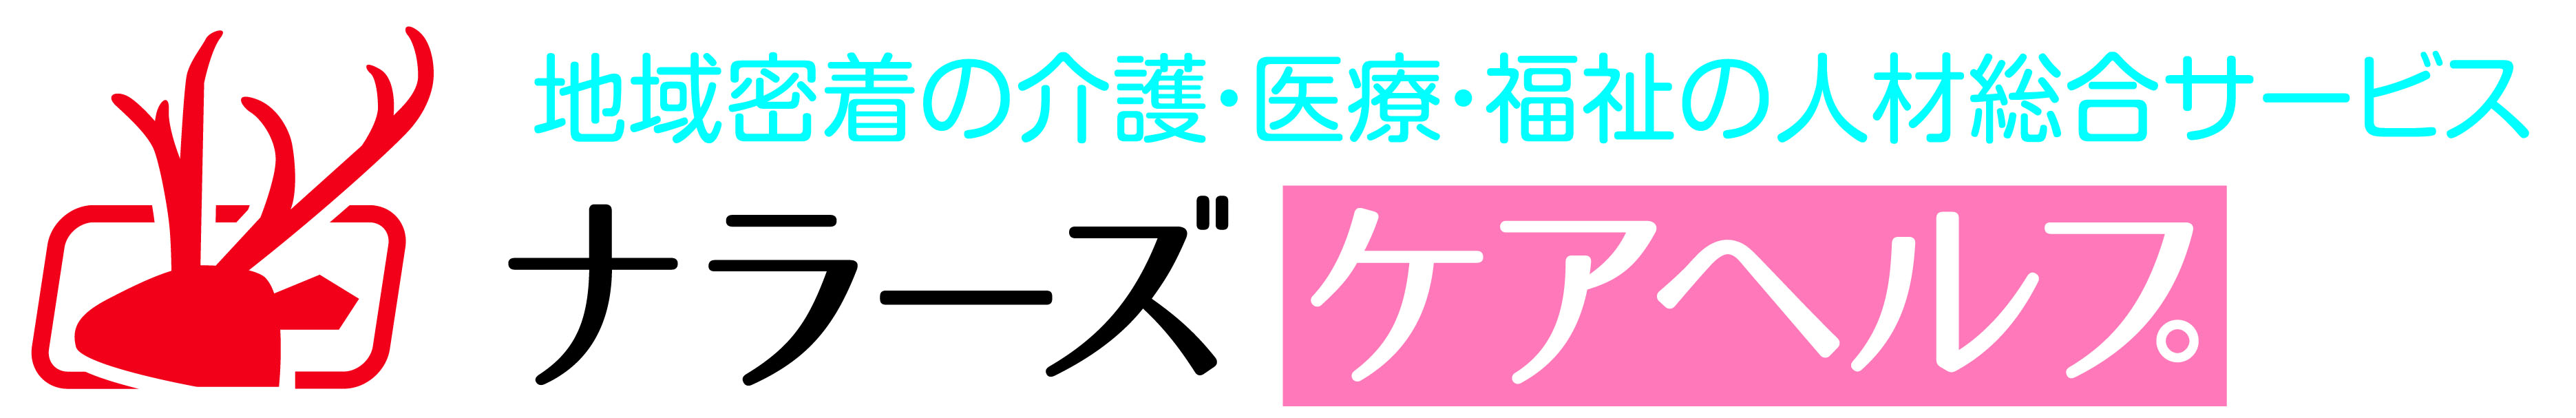 名刺ロゴ.jpgのサムネイル画像